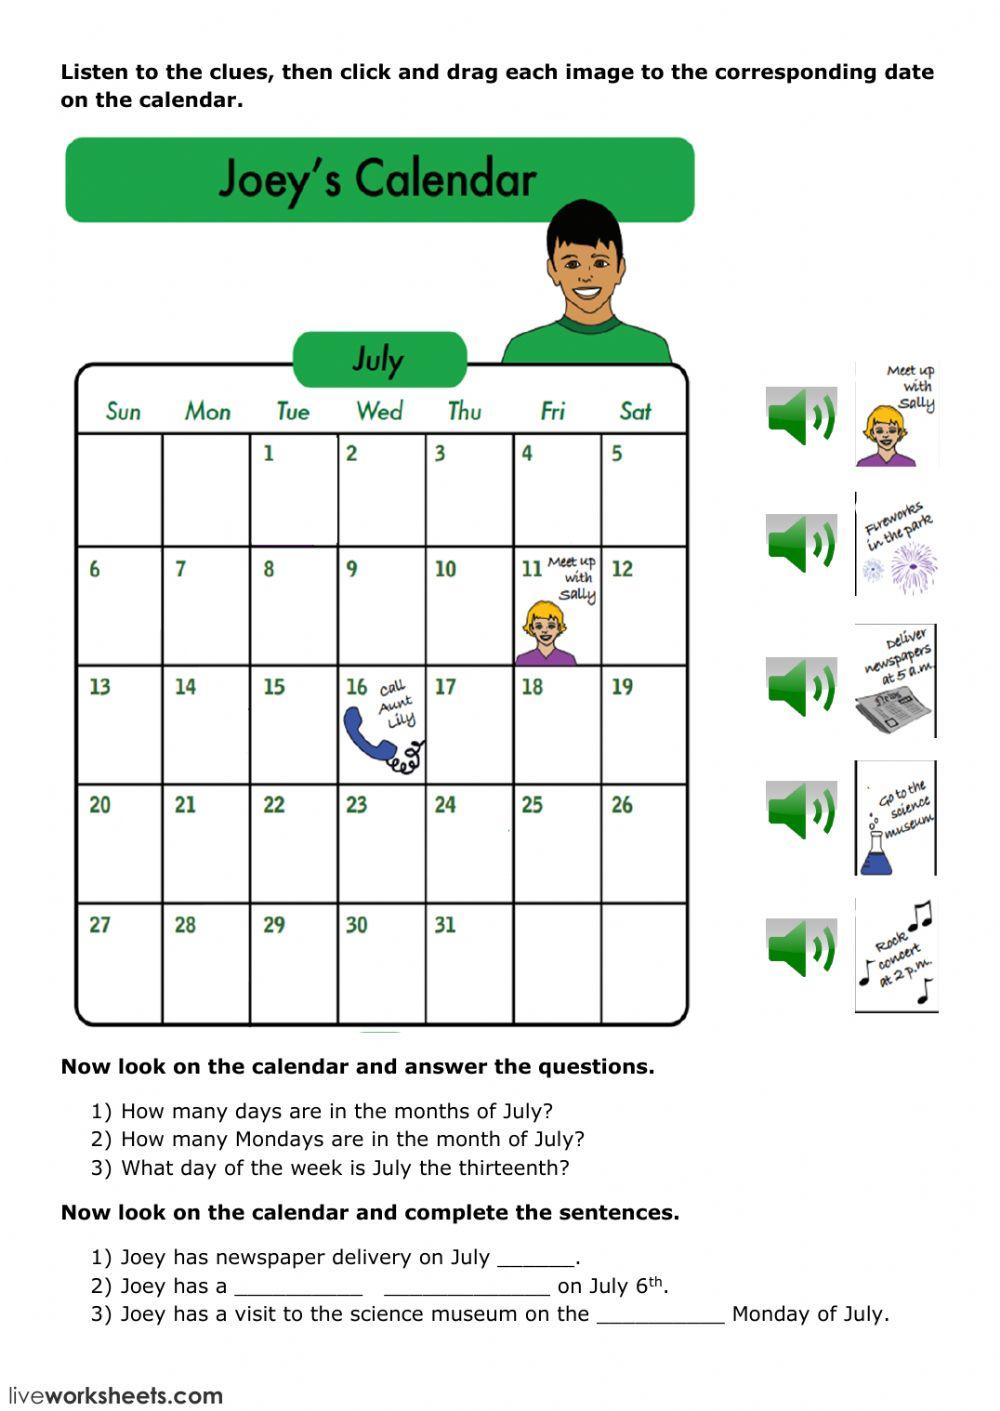 Joey's Calendar